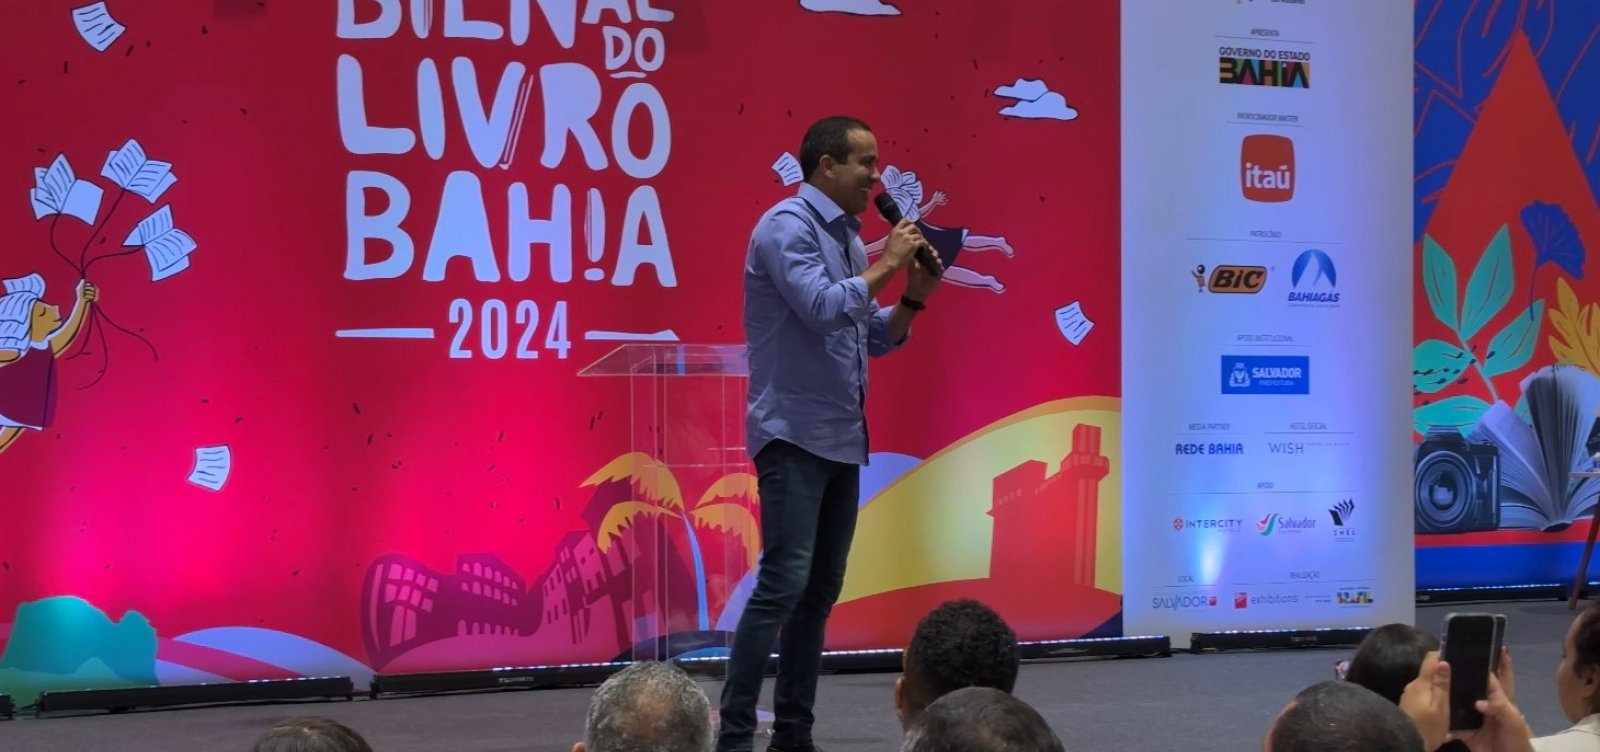 Bruno Reis participa de abertura da Bienal do Livro 2024: "Salvador será o palco principal do Brasil para a literatura"